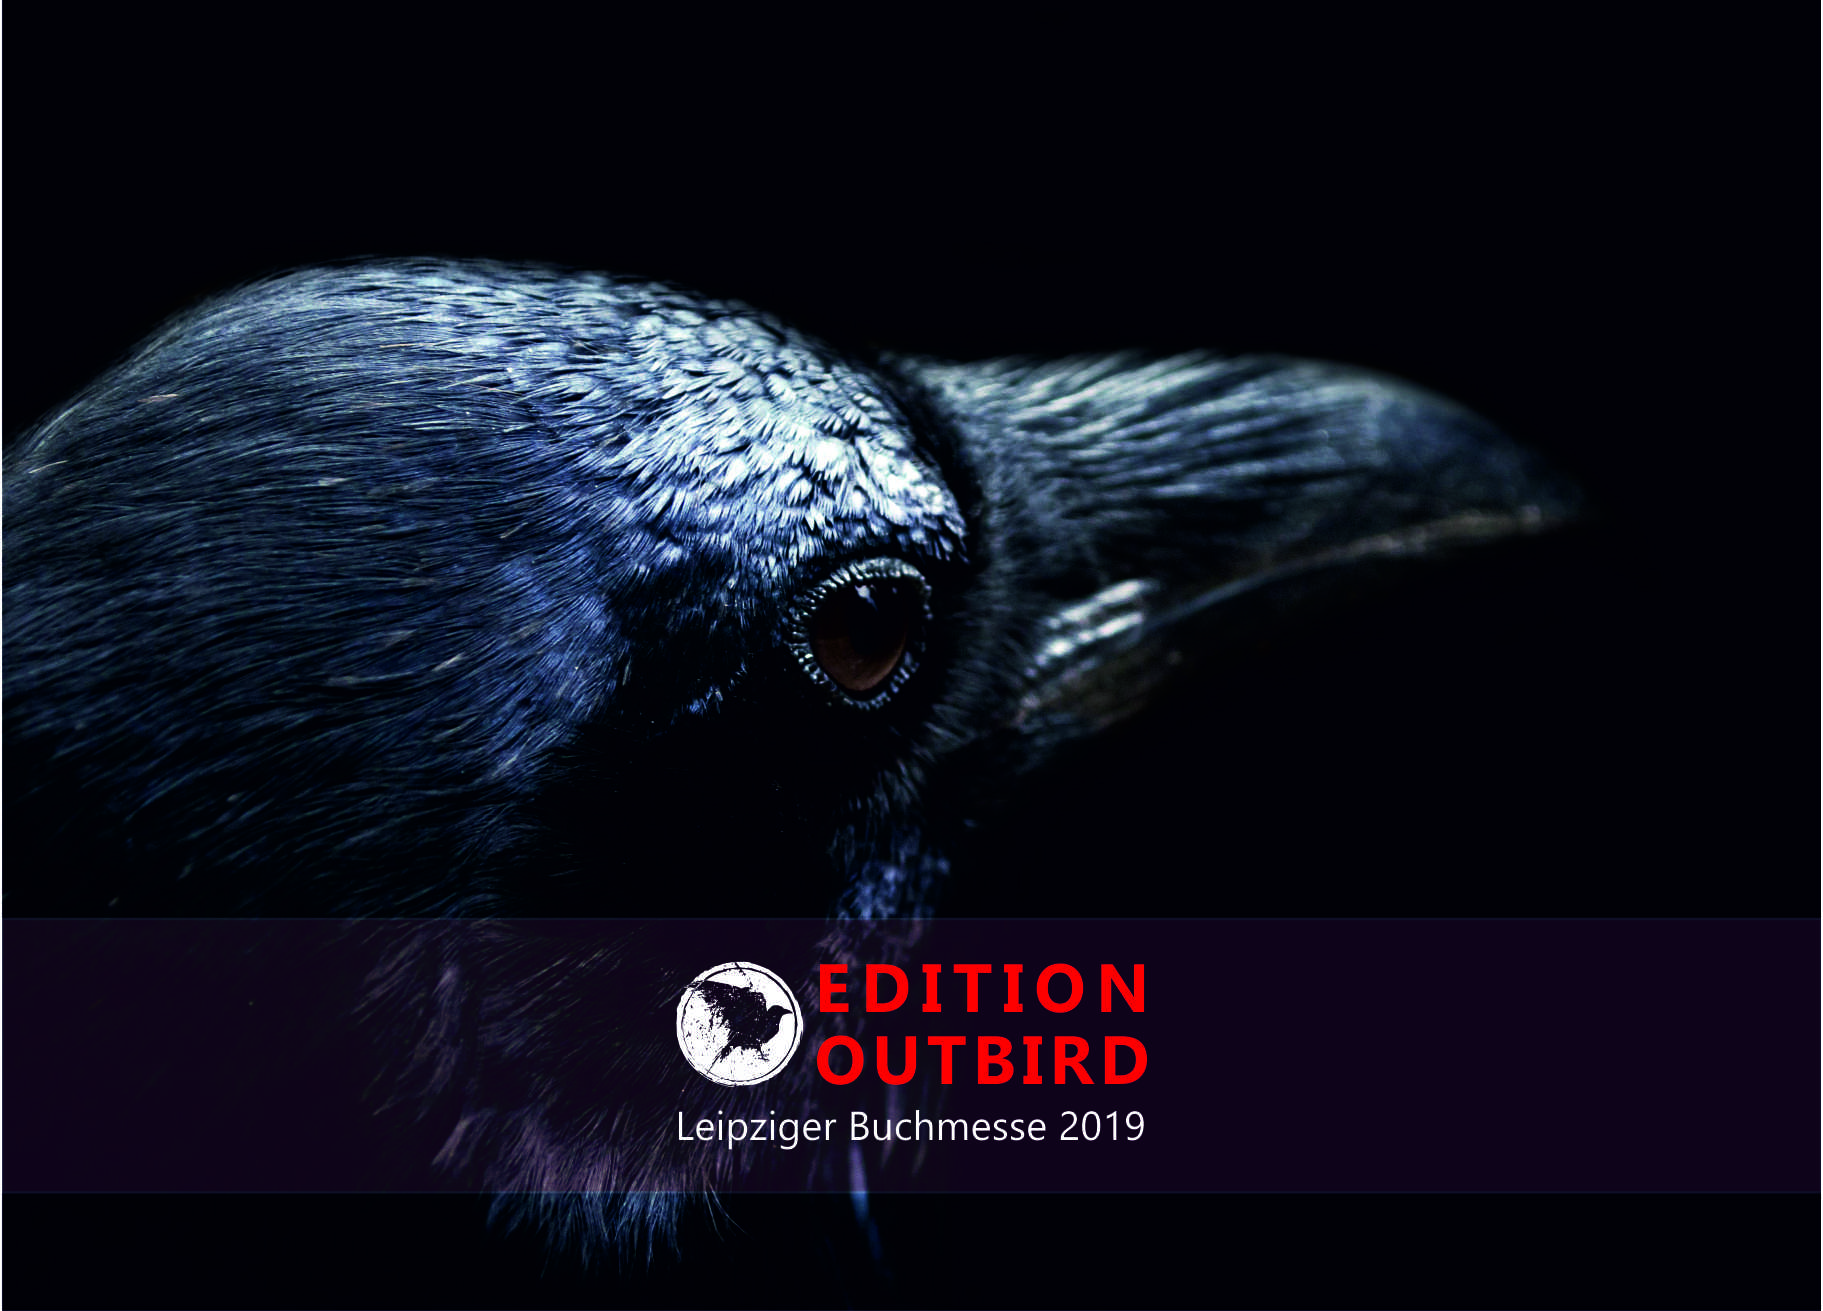 Buchmesse Leipzig 2019 Edition Outbird 3